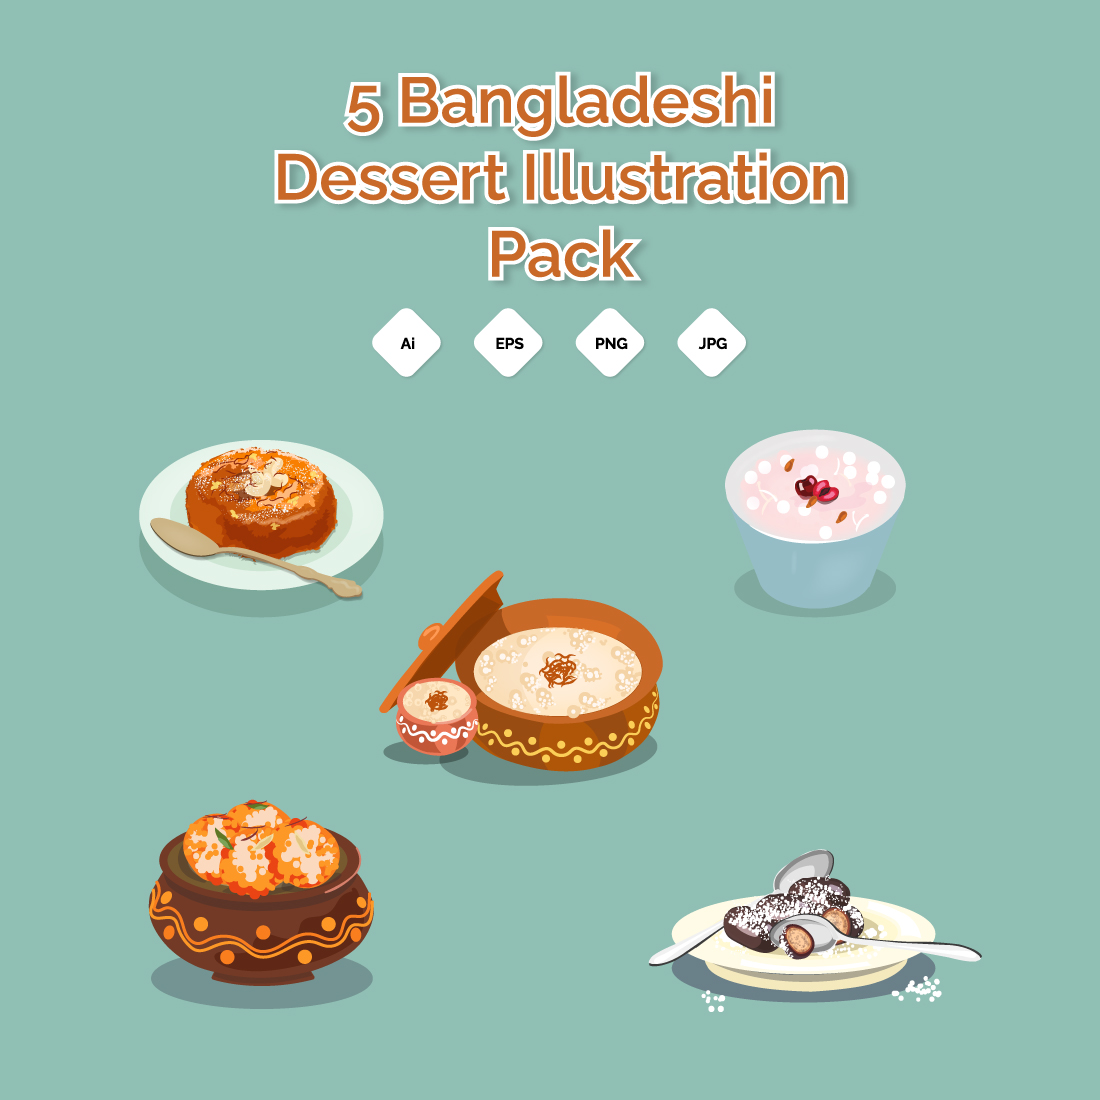 Bangladeshi Dessert Illustration pack preview image.